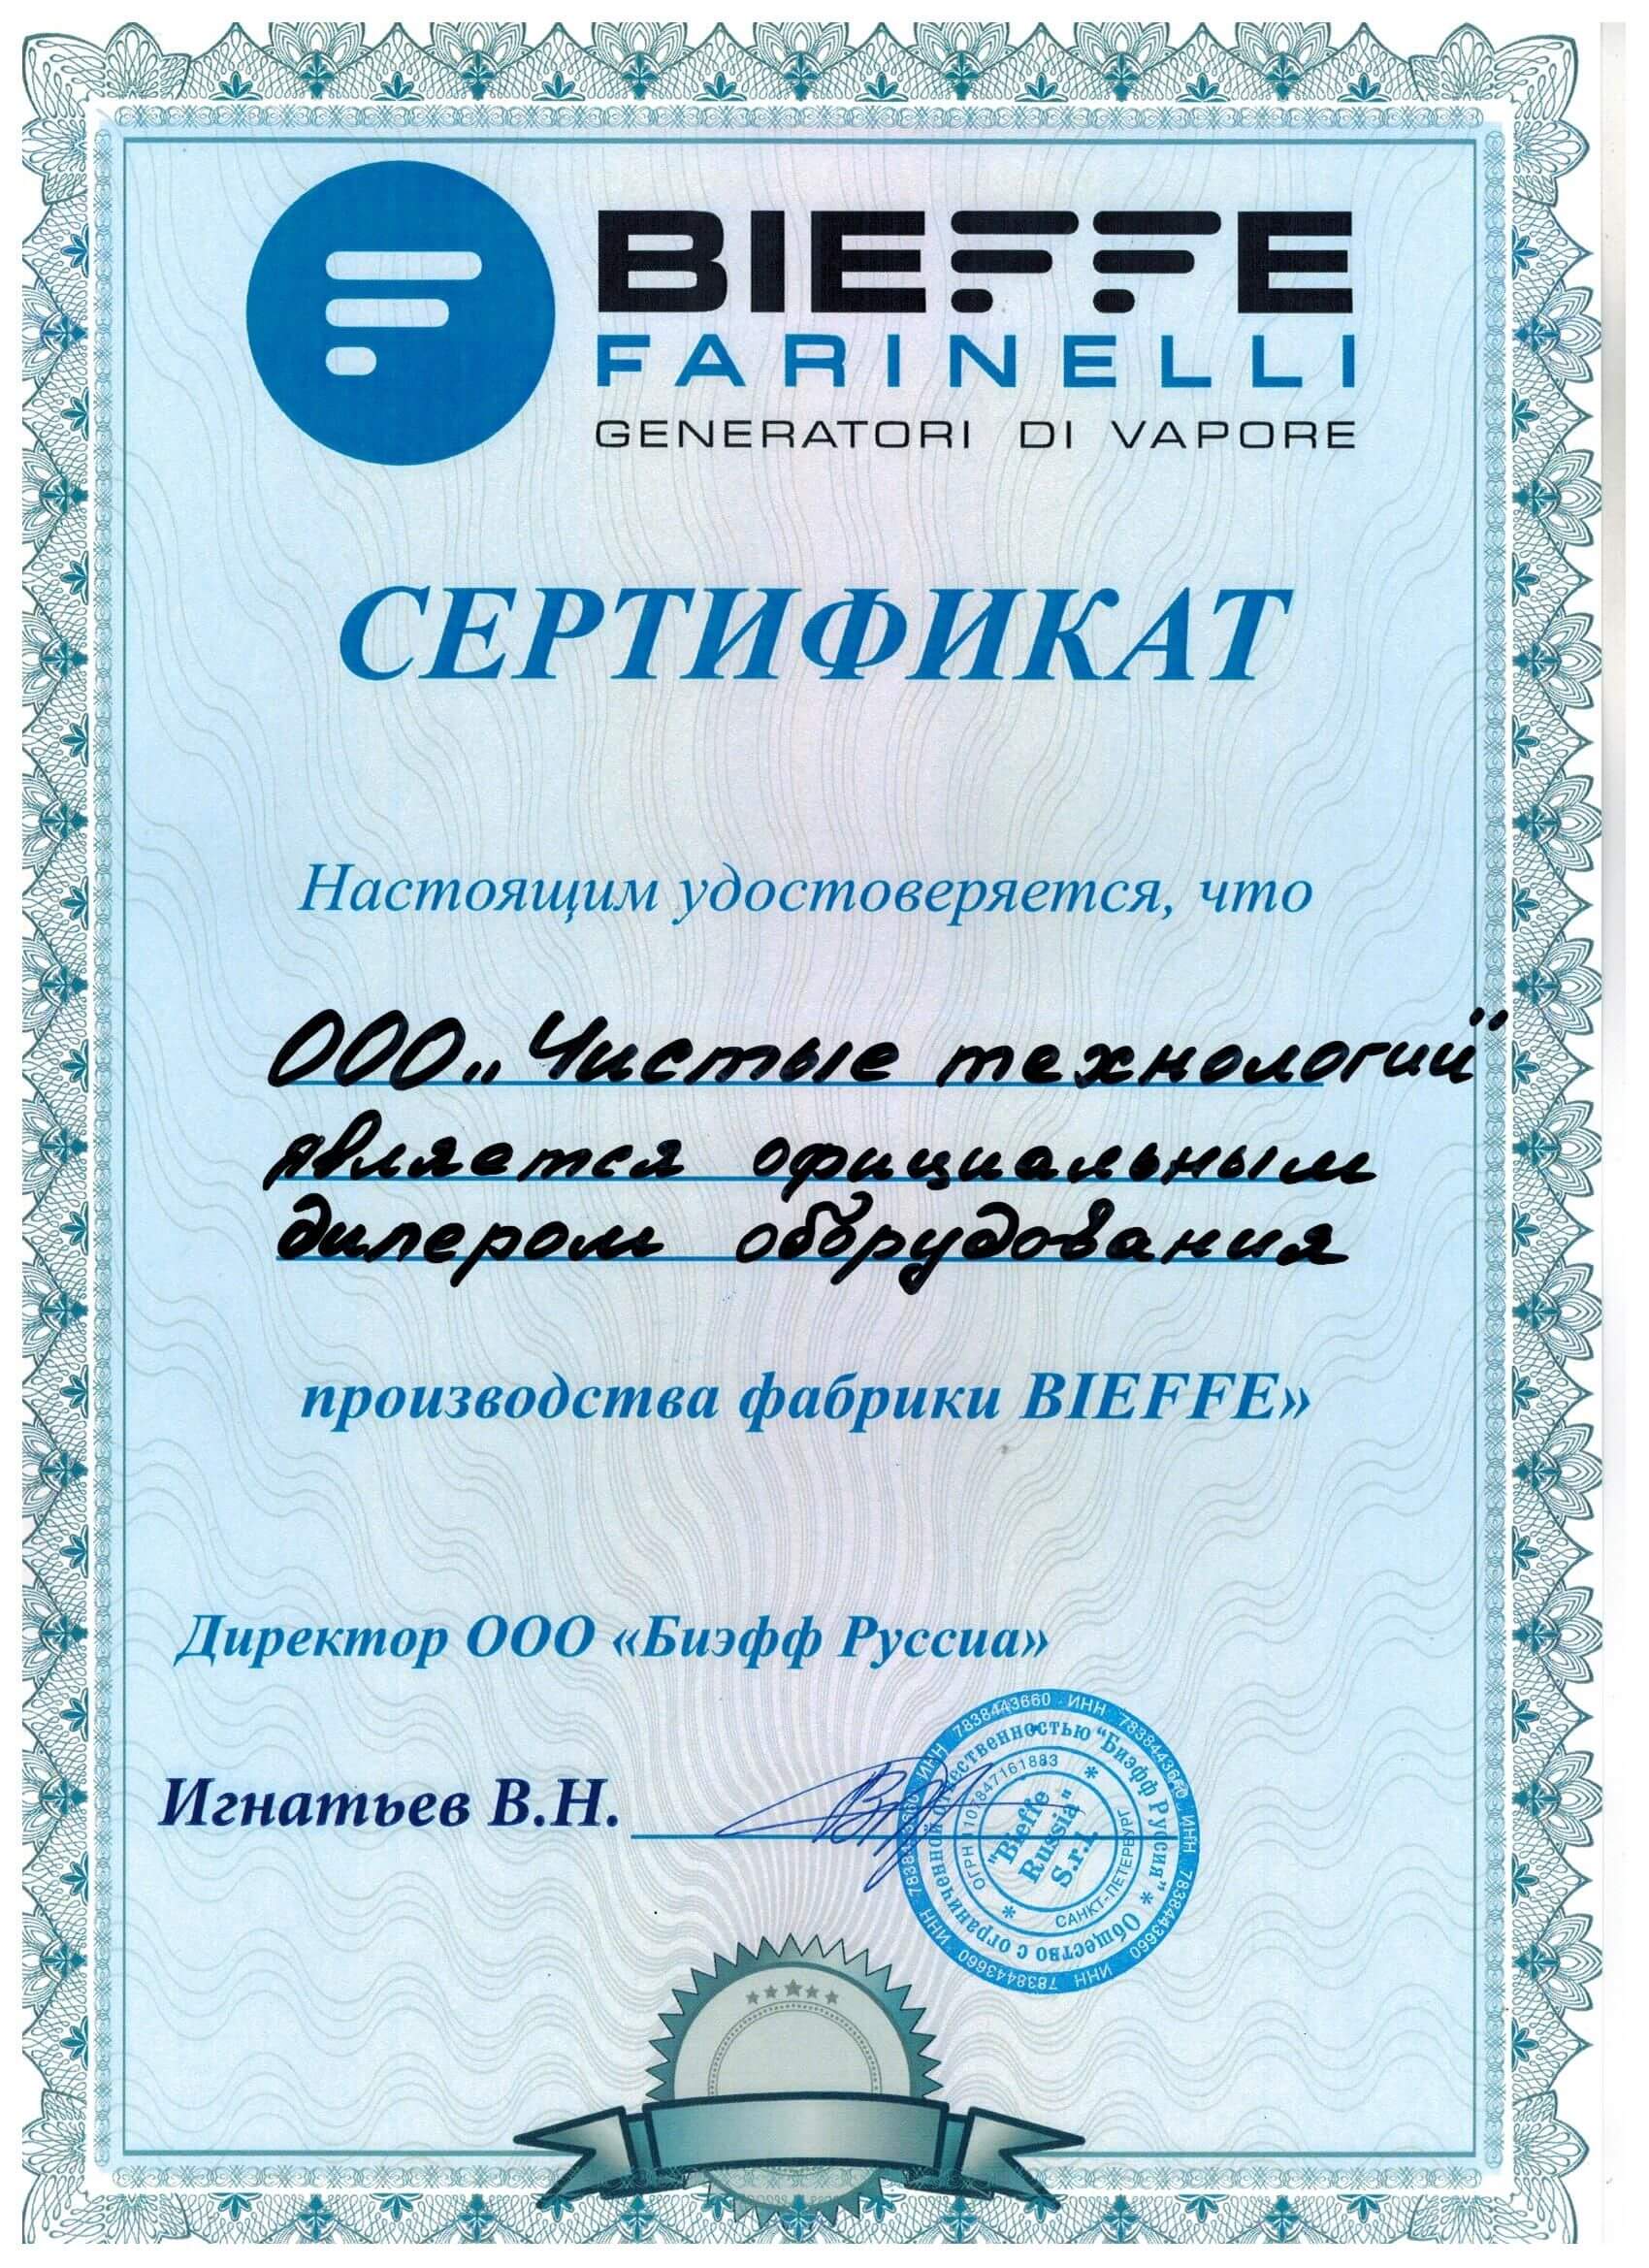 Лицензии и сертификаты № 3